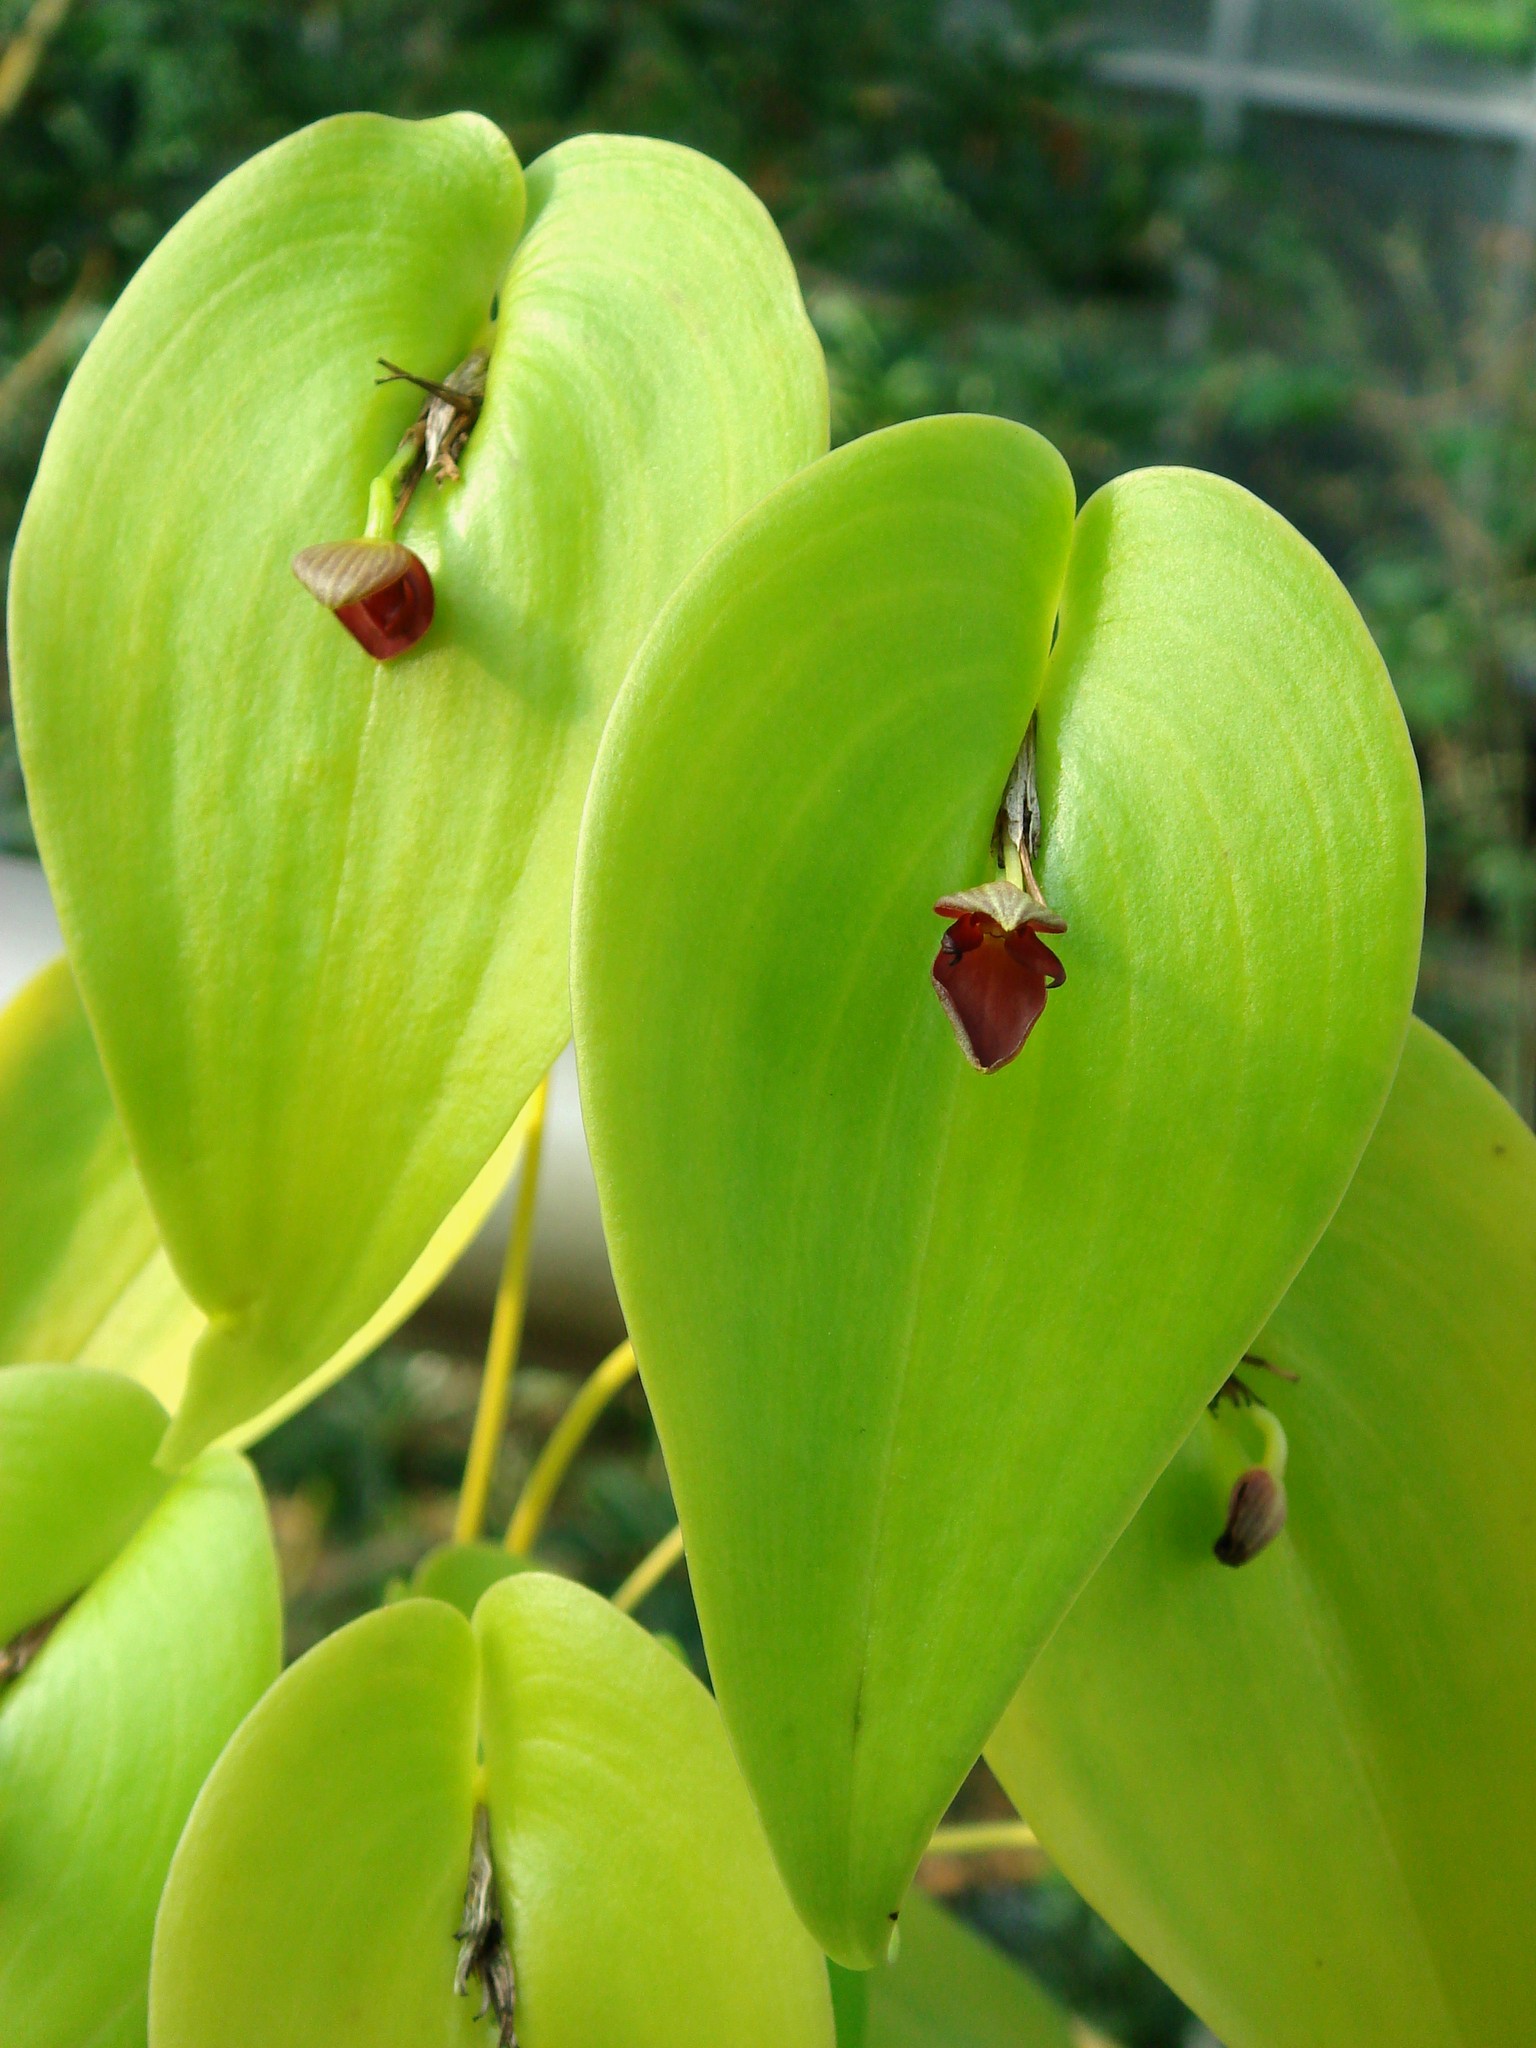 http://orchids.la.coocan.jp/Pleurothallis/Pleurothallis%20cardiothallis/DSC02015.JPG